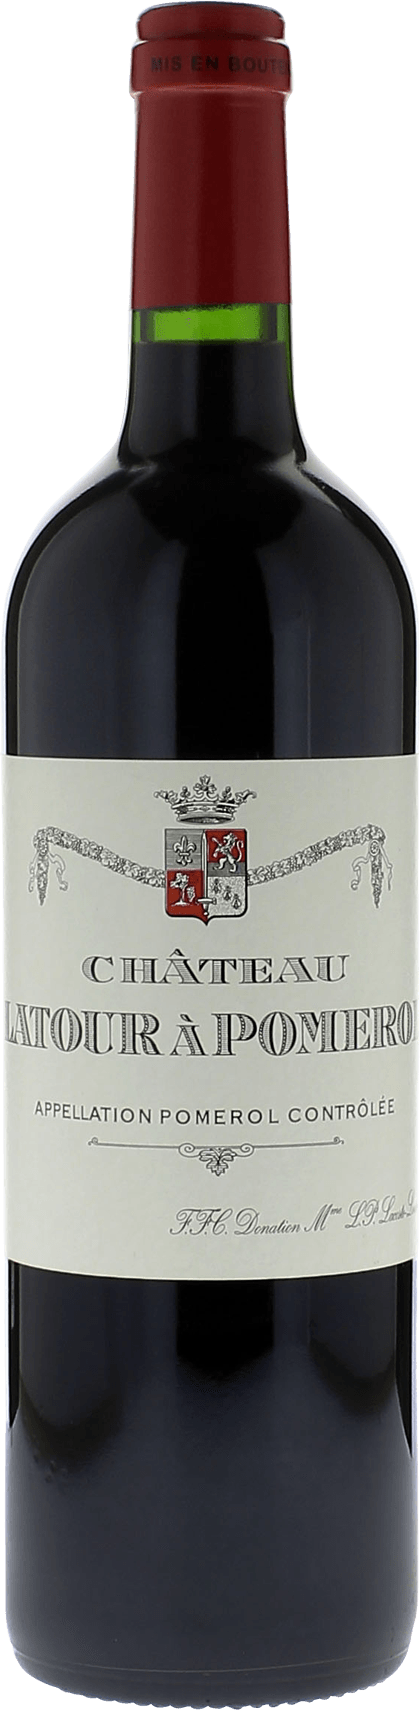 Latour  pomerol 1988  Pomerol, Bordeaux rouge